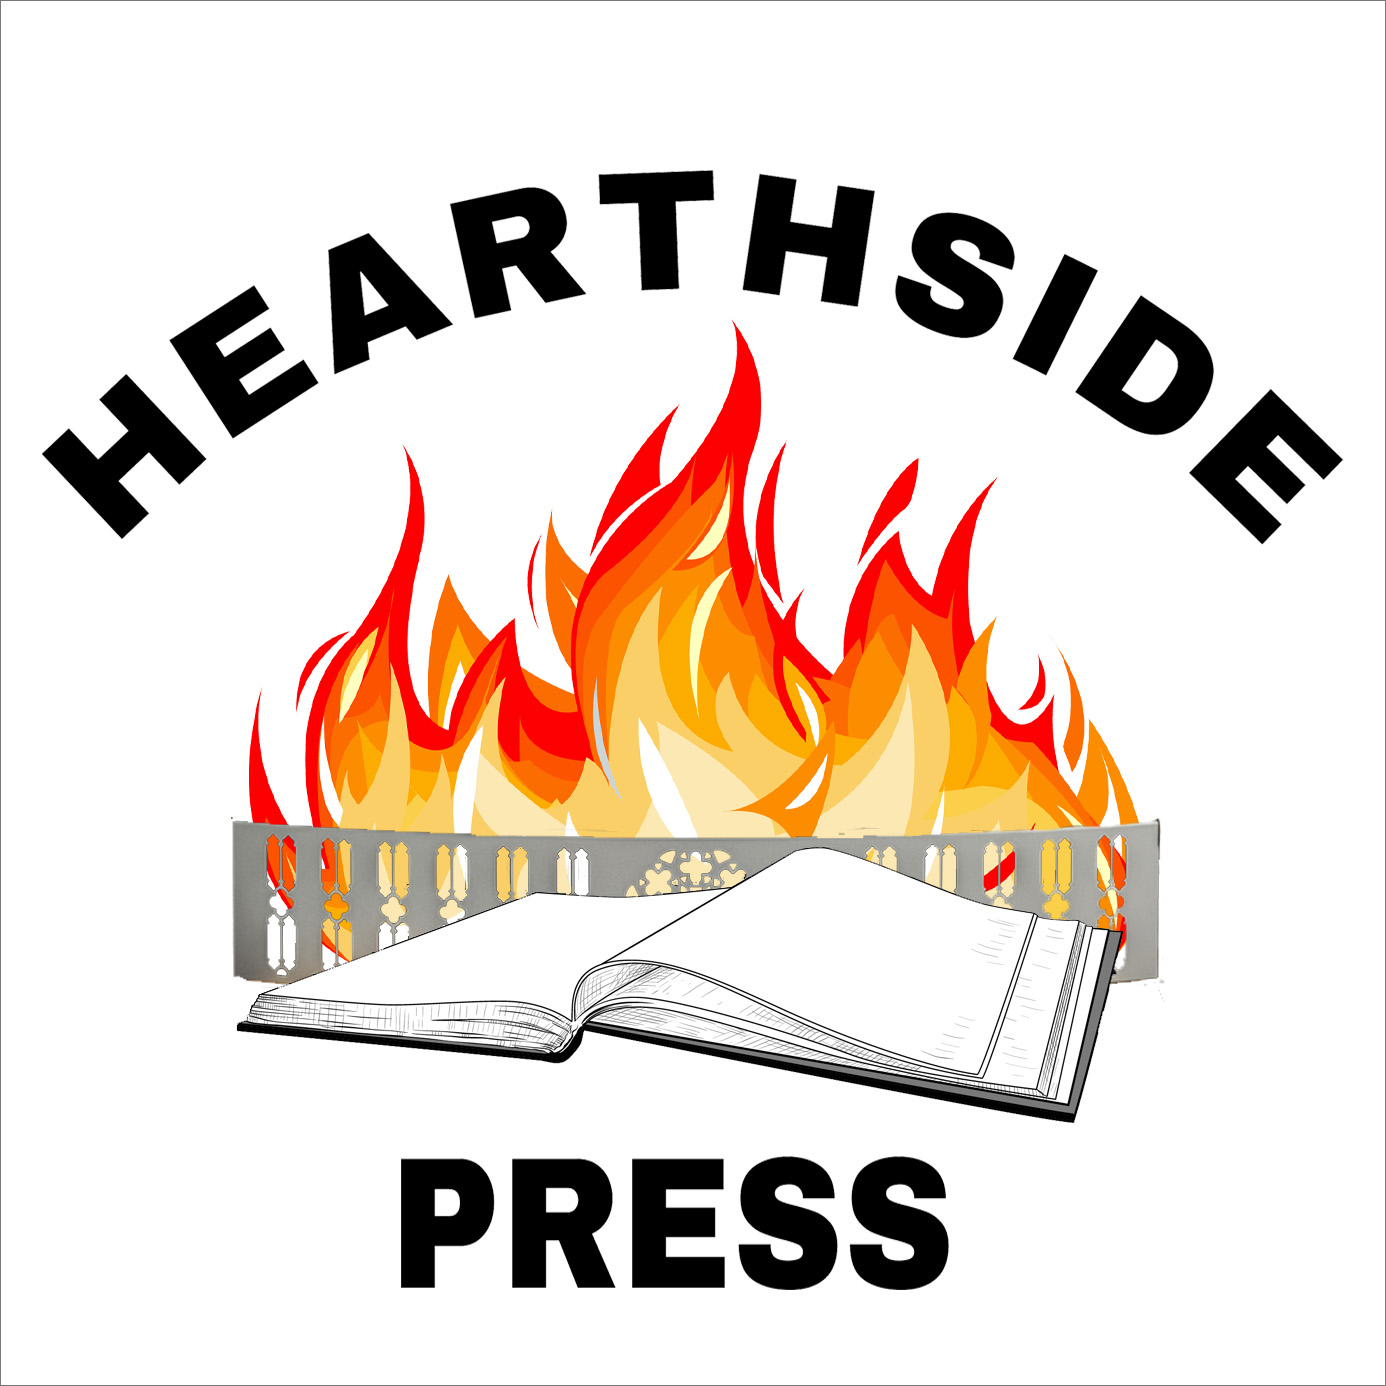 Hearthside Press